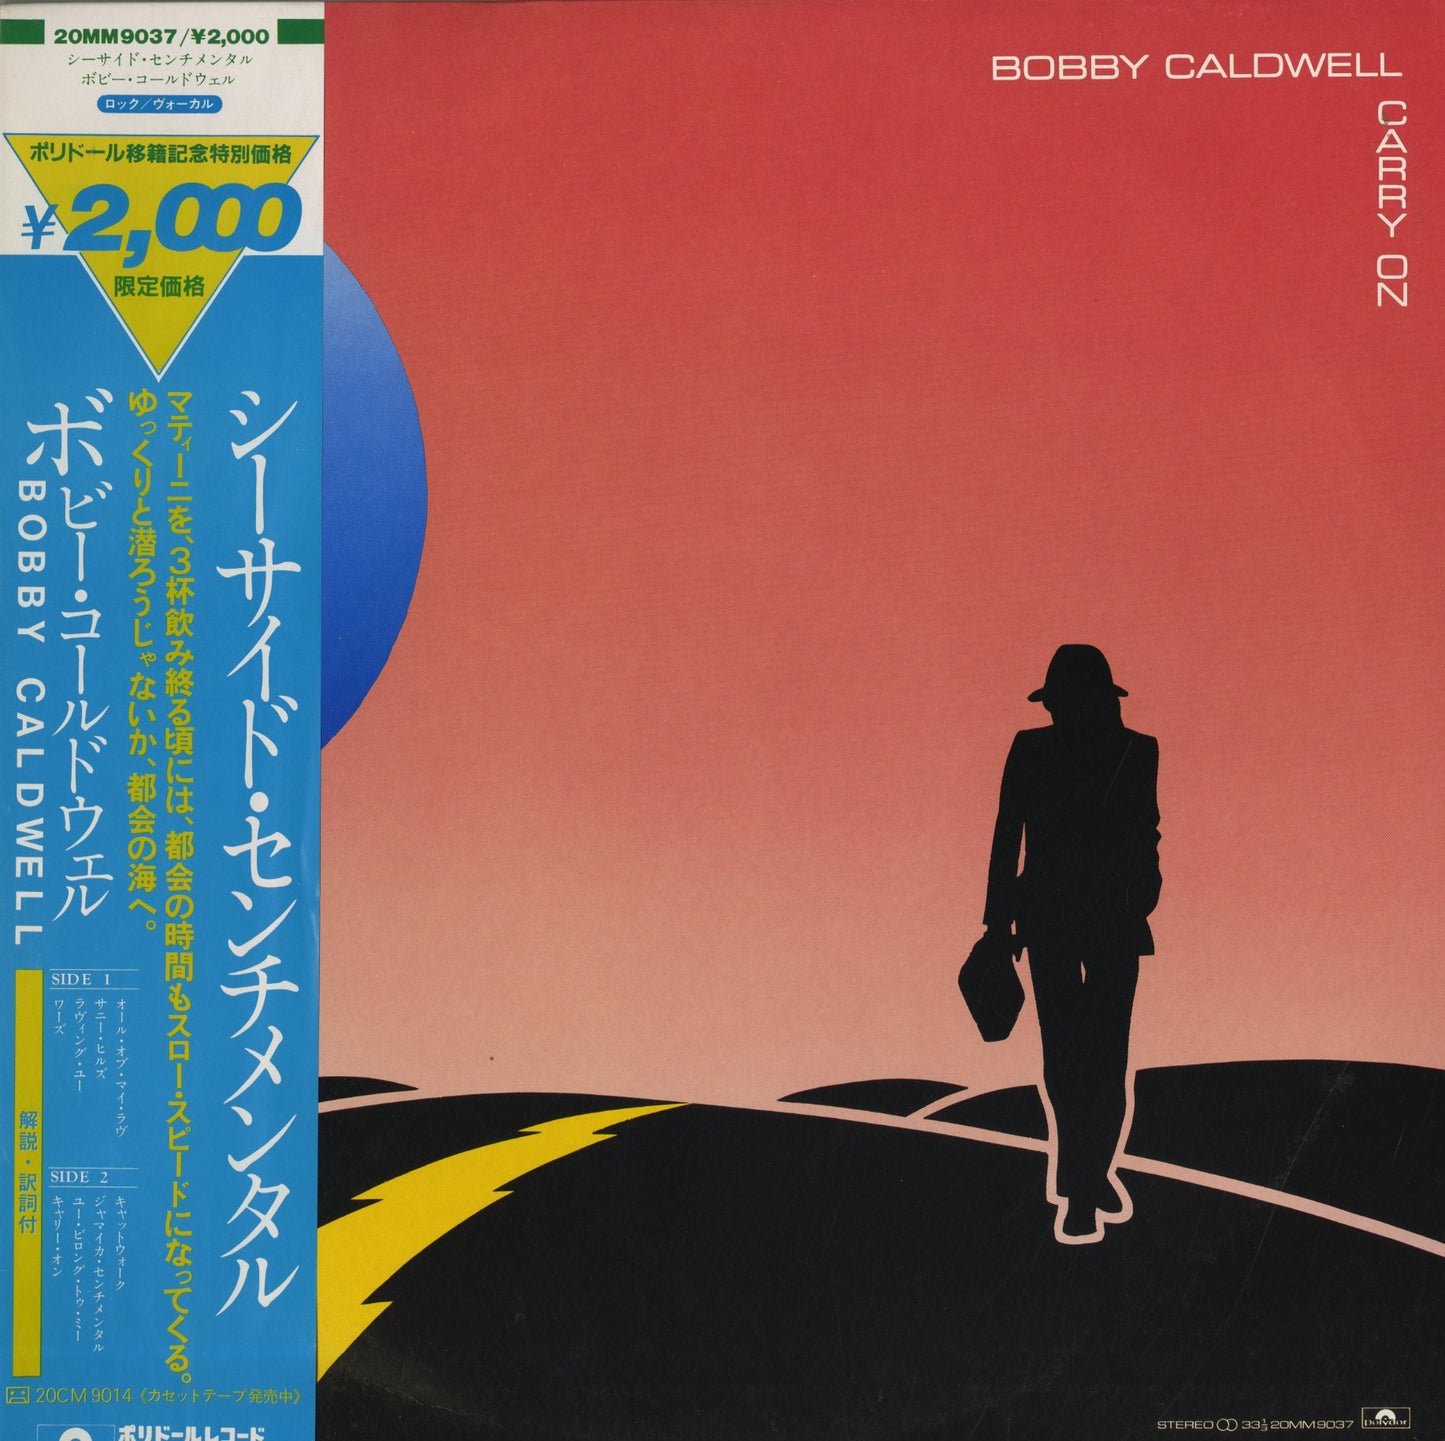 Bobby Caldwell / ボビー・コールドウェル / Carry On (20MM9037)